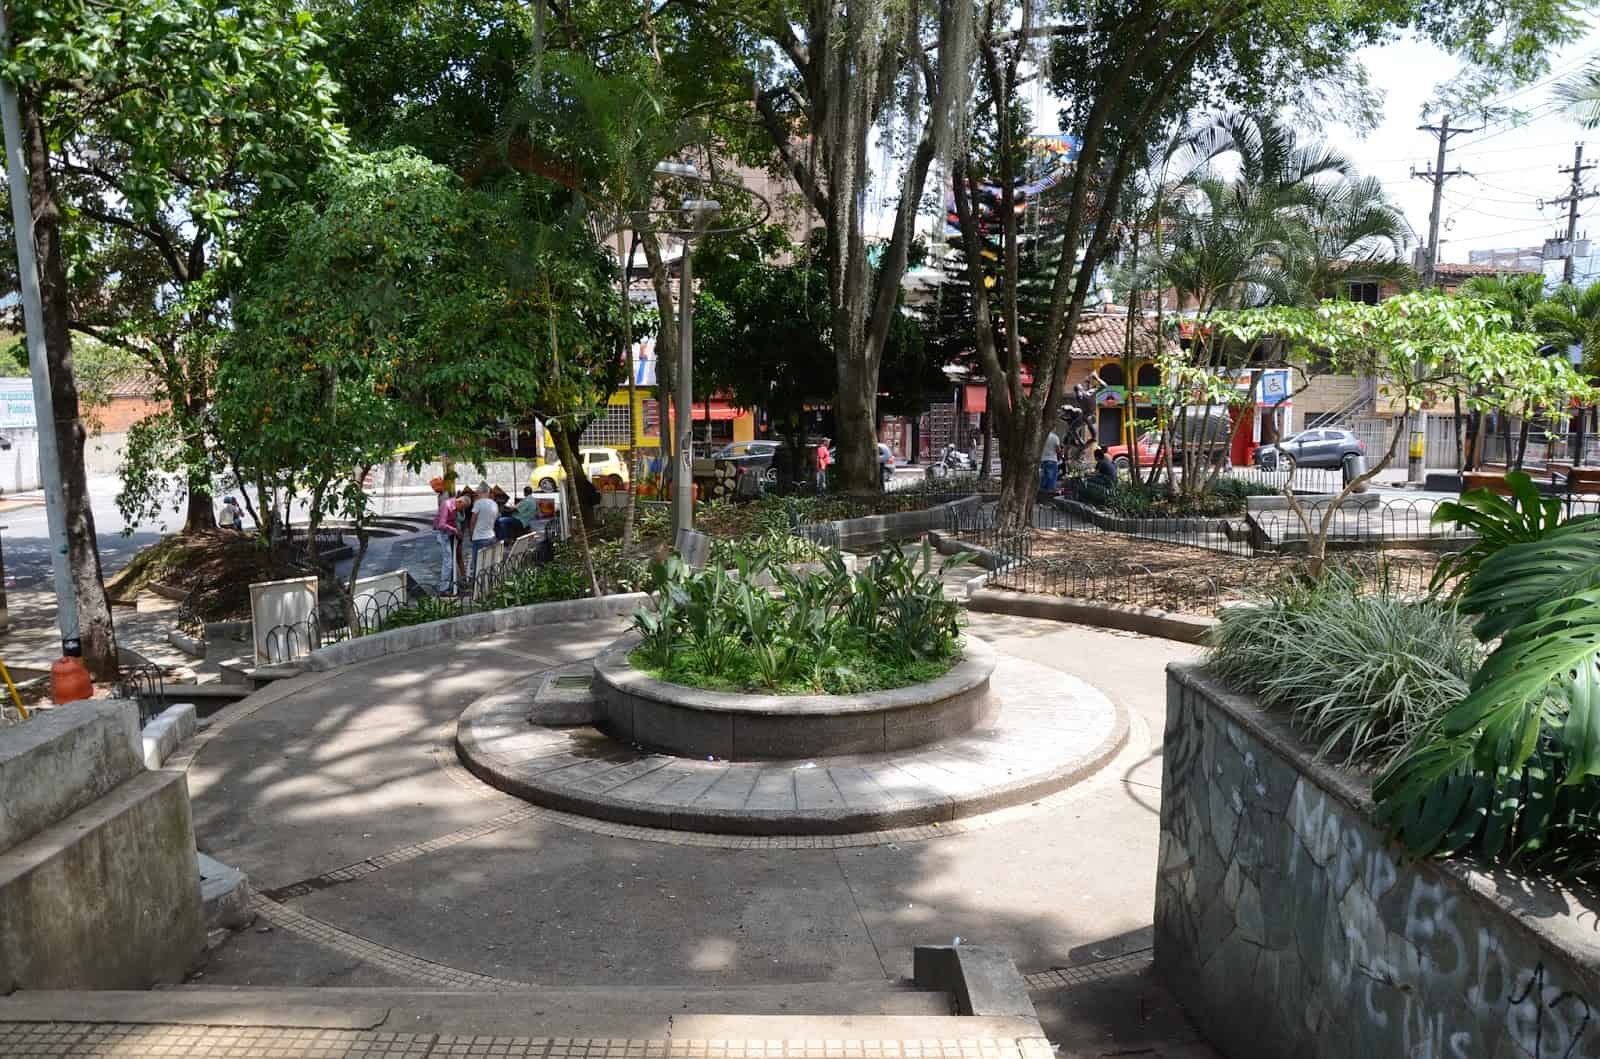 Parque Lleras in El Poblado, Medellín, Antioquia, Colombia